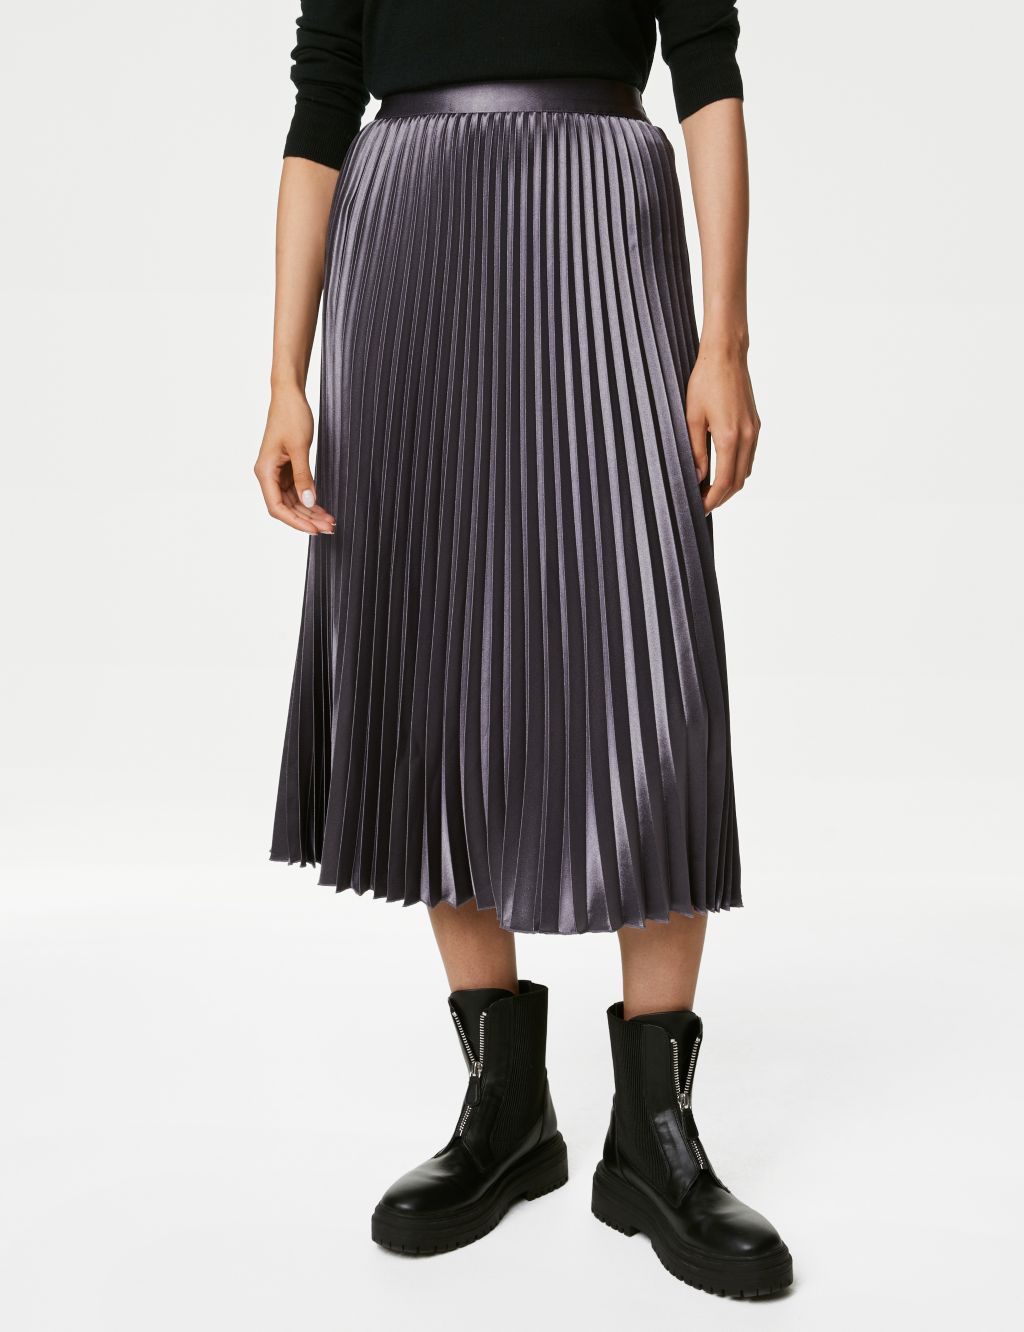 Satin Pleated Midaxi Skirt image 4